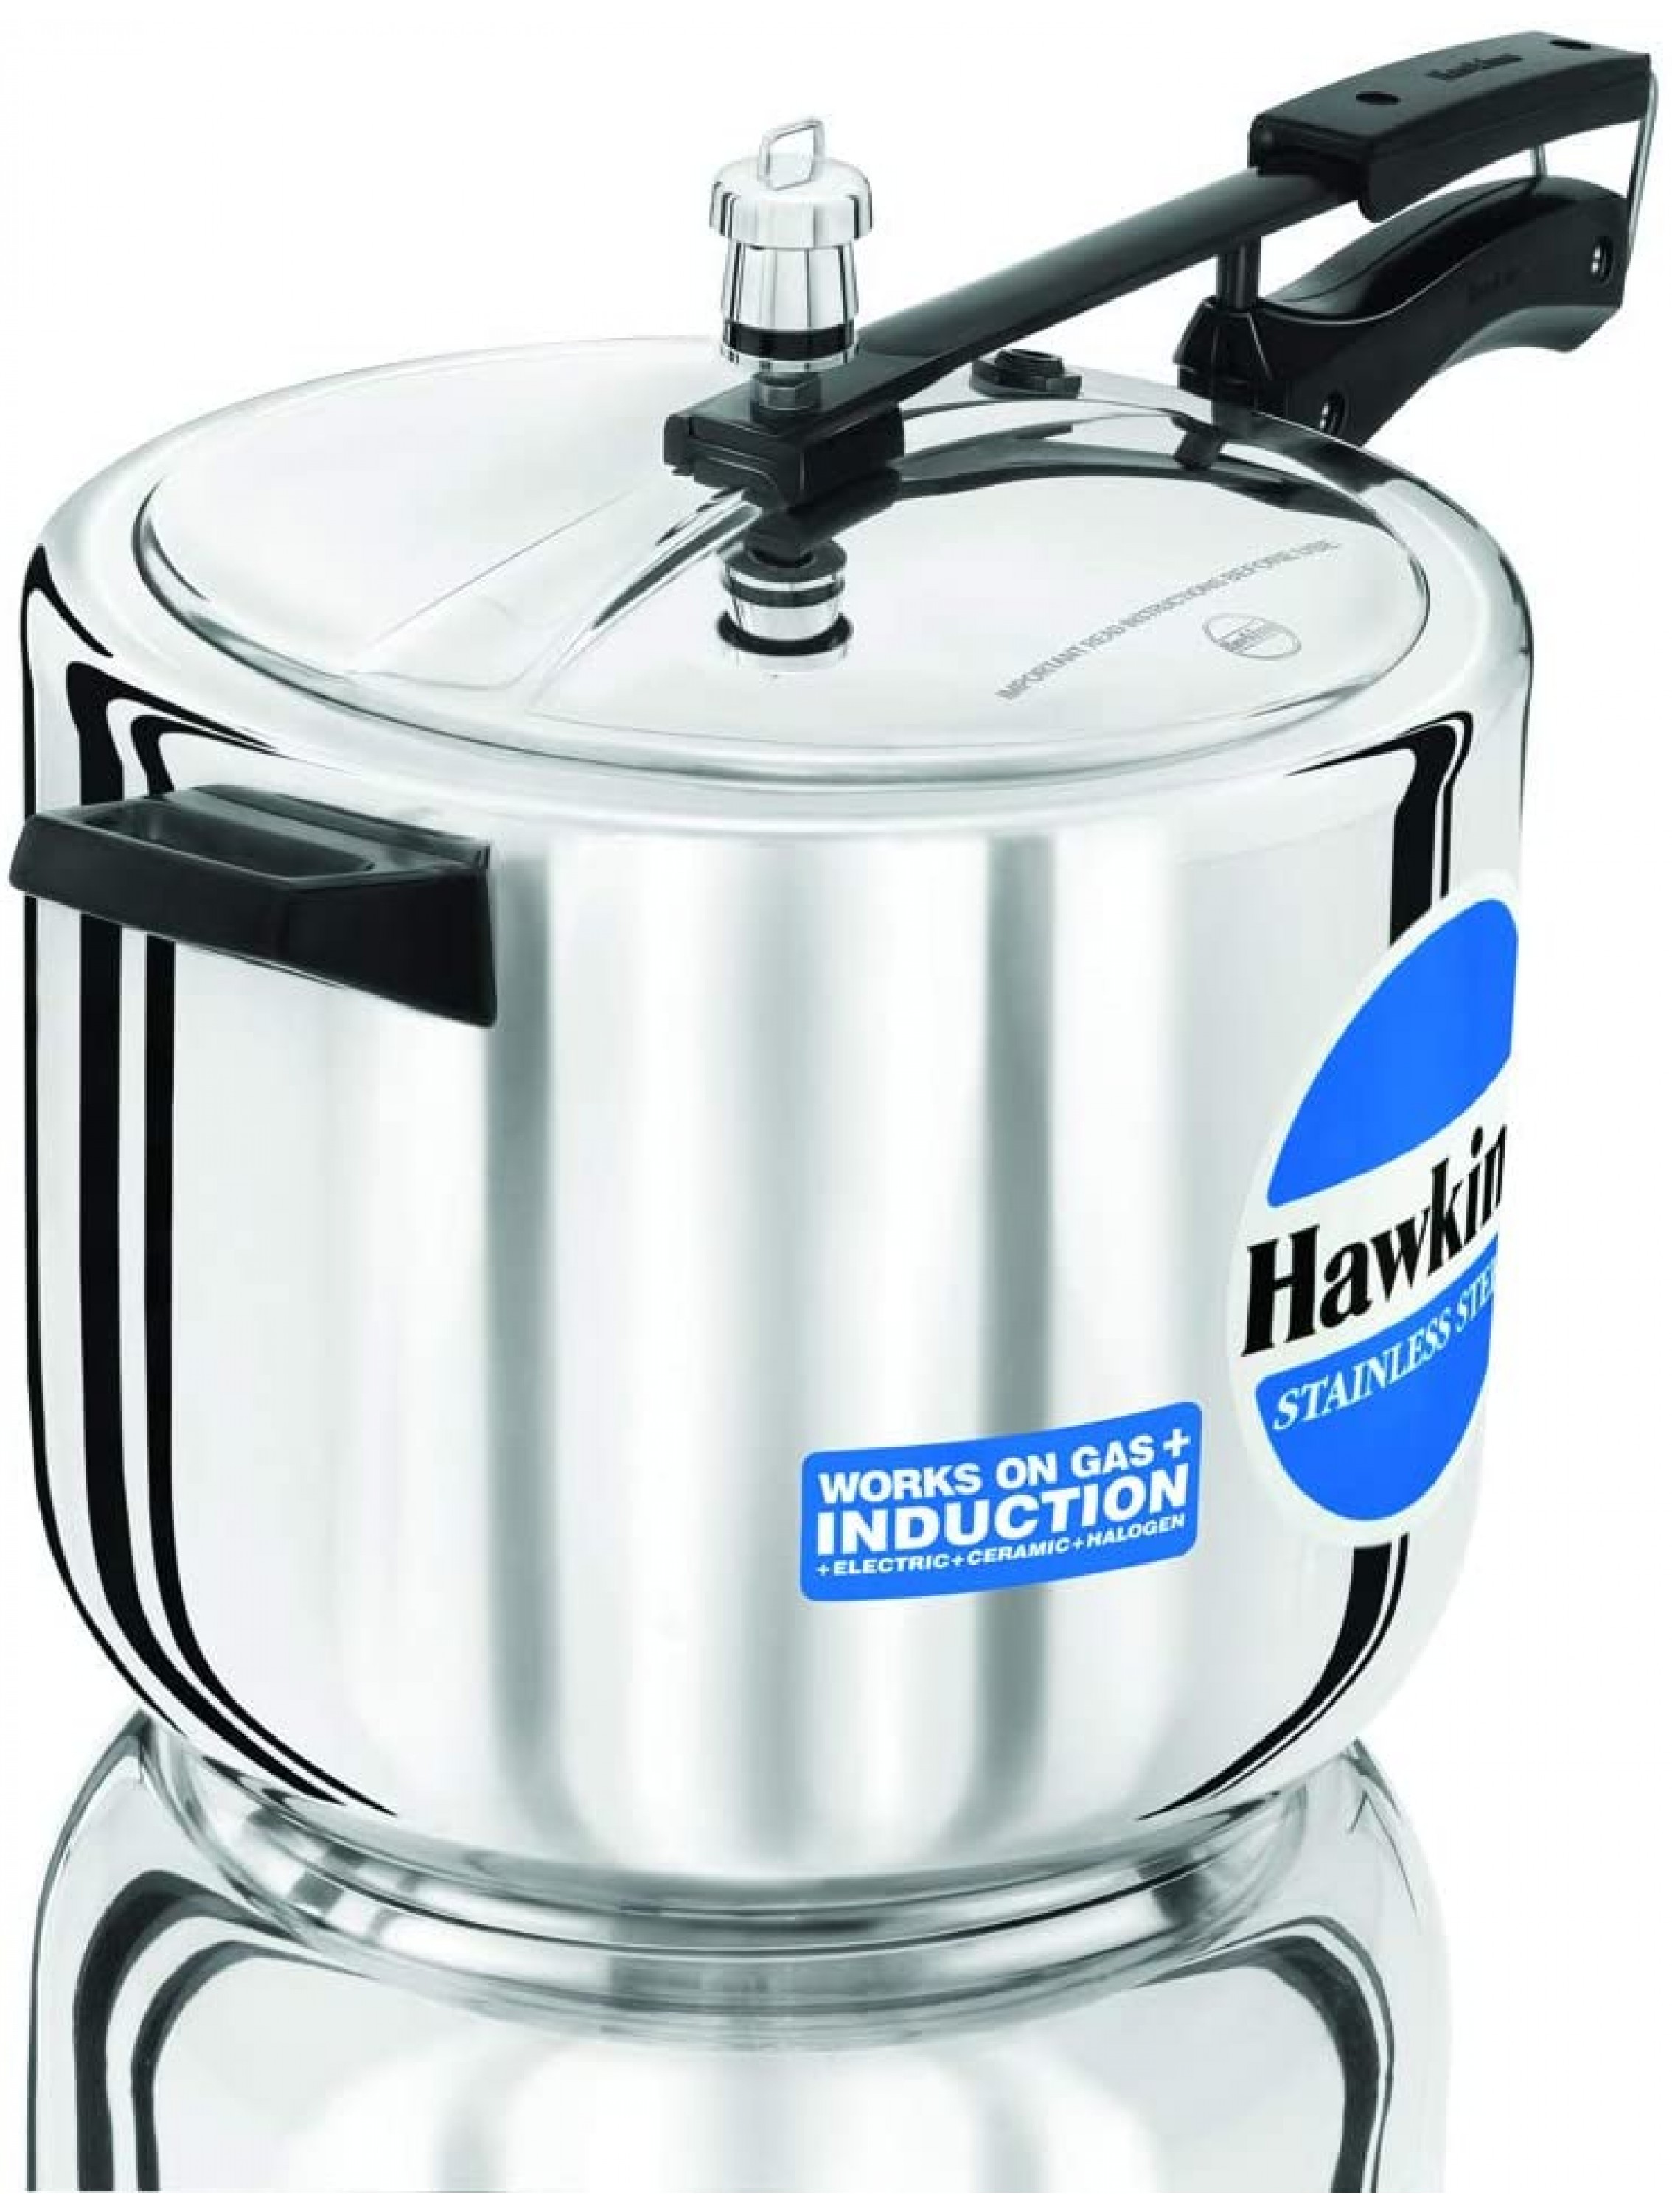 Hawkins Stainless Steel Pressure Cooker 10-Liter - BP7DF9H2Z